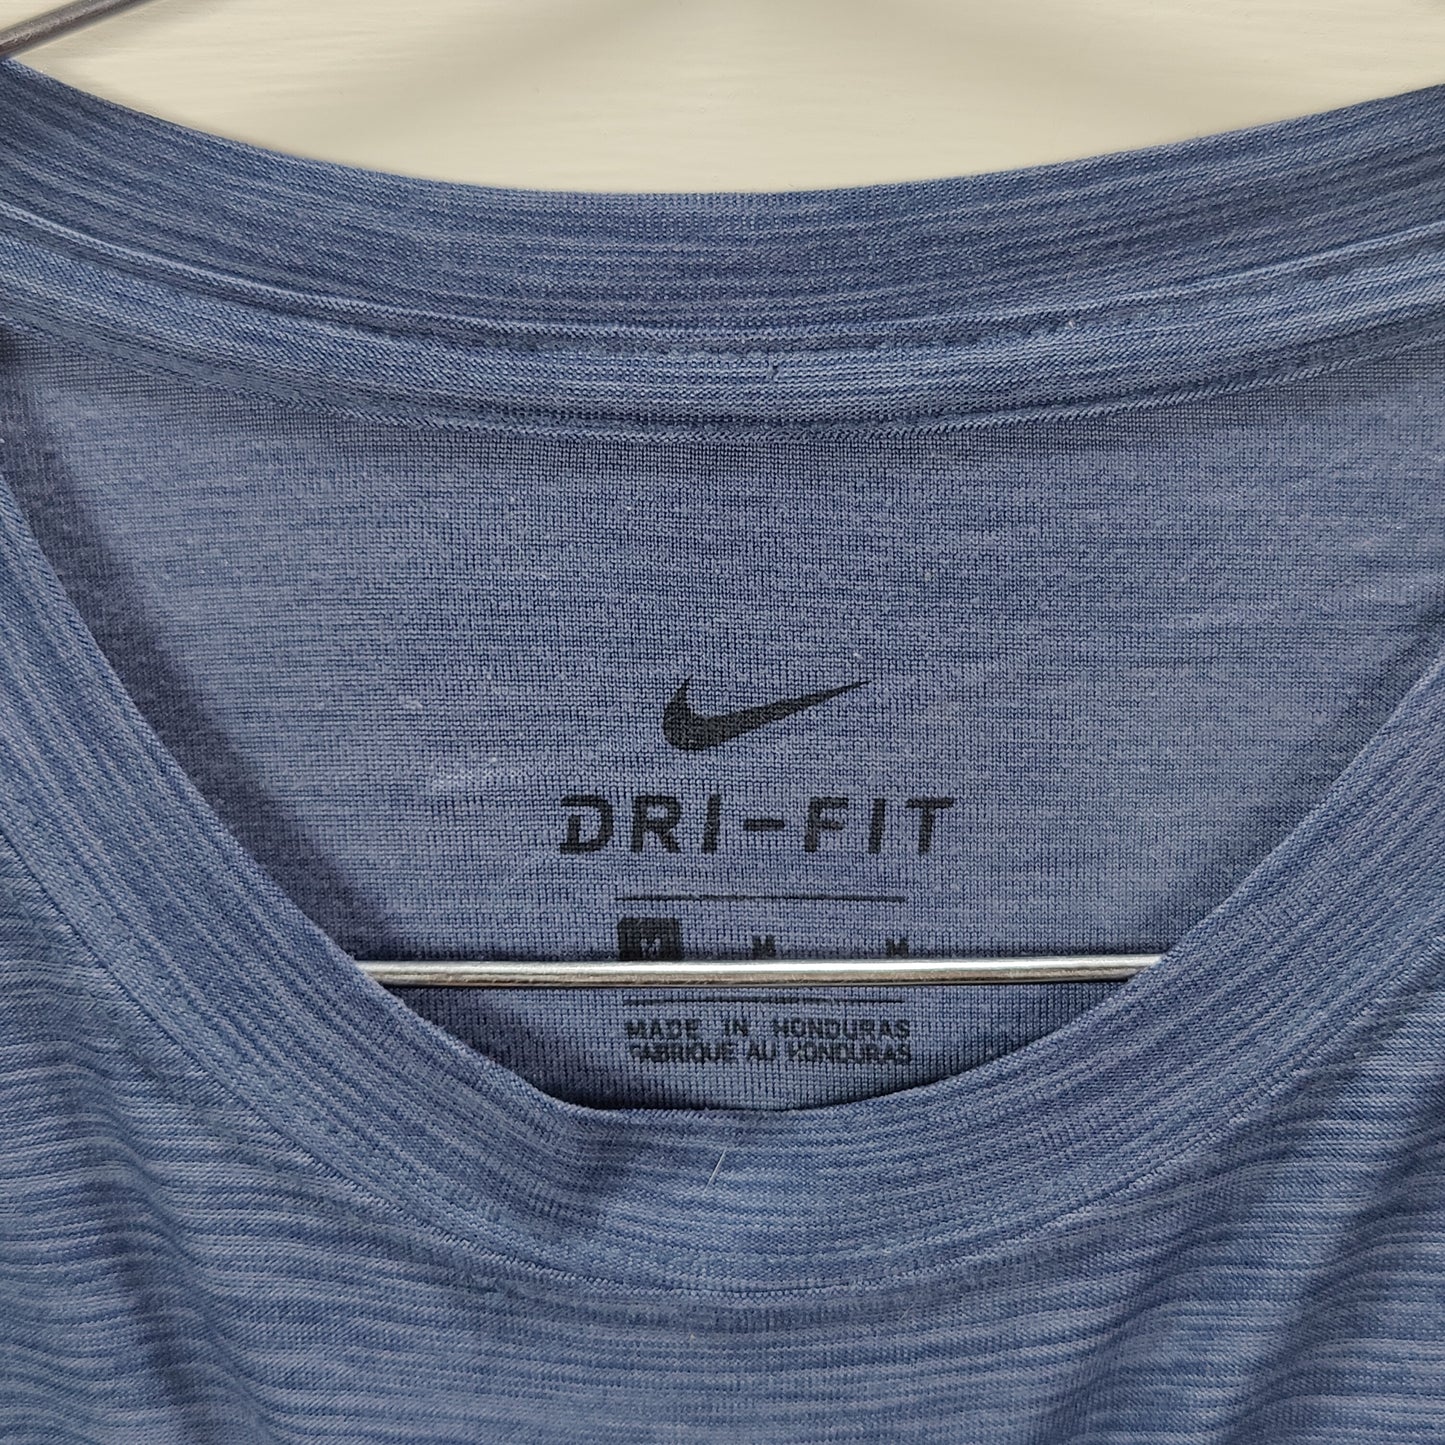 Nike DriFit Shirt - Blue